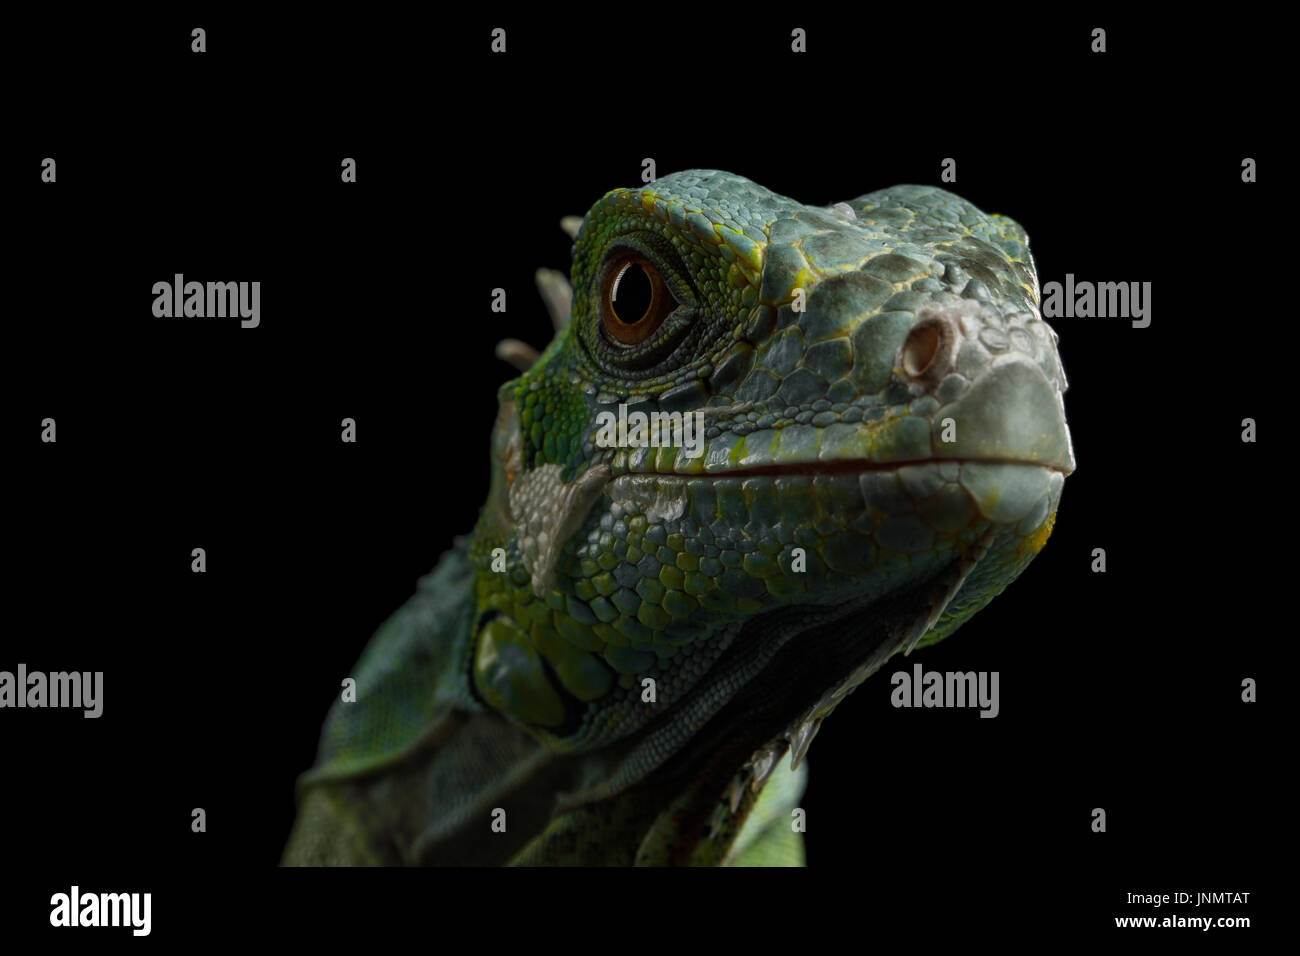 Green iguana isolated on black background Stock Photo